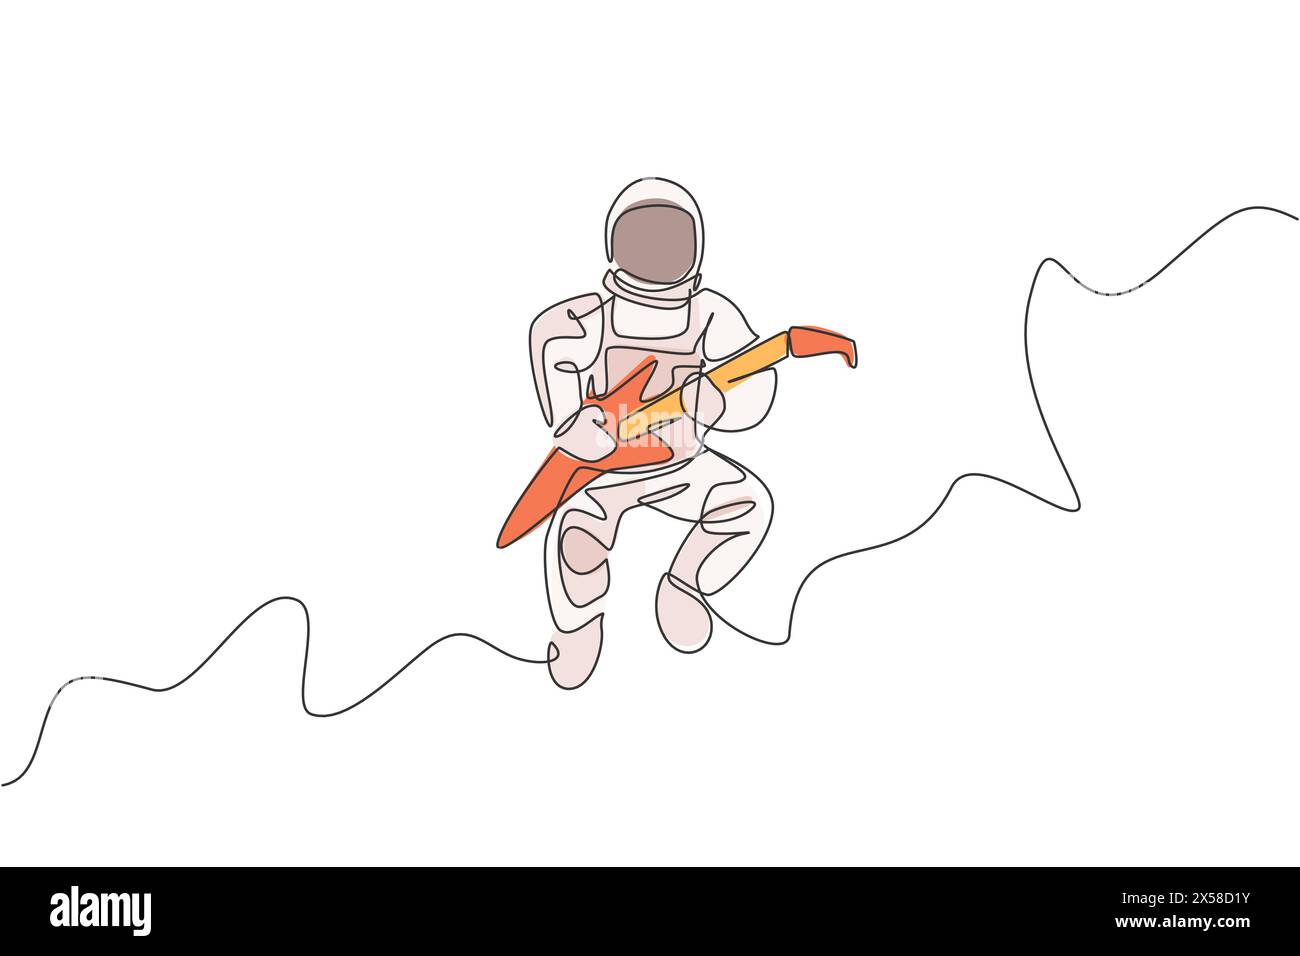 Un disegno continuo di astronauta con tuta spaziale che suona la chitarra elettrica nell'universo galassico. Concerto di musica spaziale. Singolo dinamico Illustrazione Vettoriale